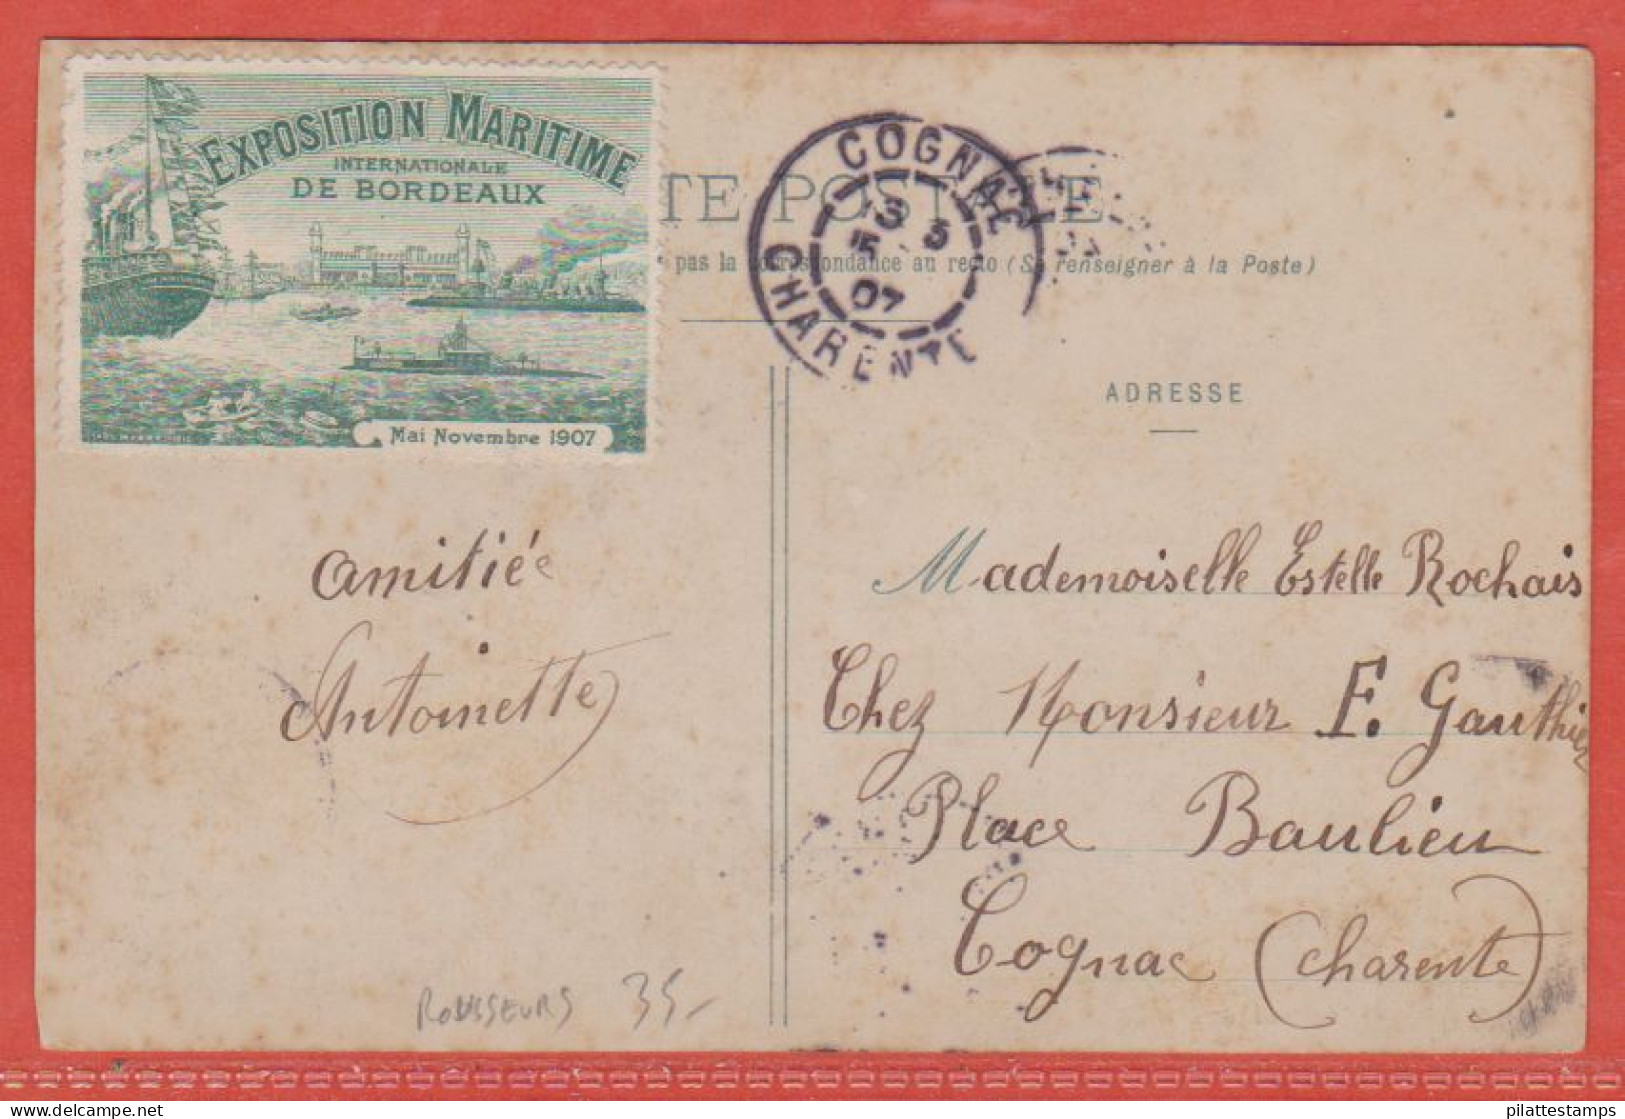 FRANCE VIGNETTE EXPO MARITIME SUR CARTE POSTALE DE 1907 DE BORDEAUX (ROUSSEURS) - Filatelistische Tentoonstellingen